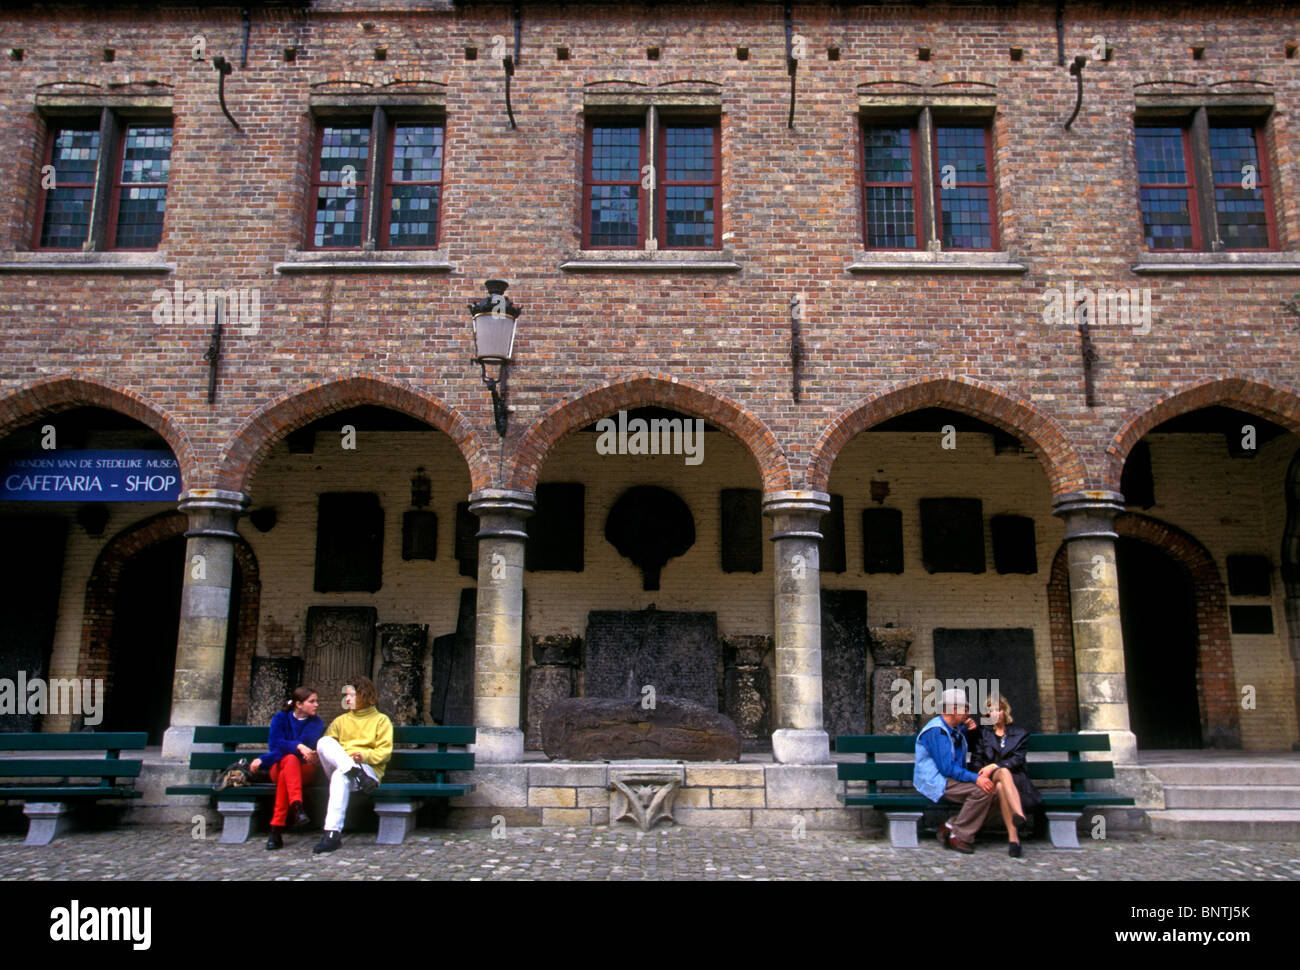 La Gente seduta sul banco di fronte al Museo Gruuthuse nella città di Brugge Fiandre occidentale provincia Belgio Europa Foto Stock